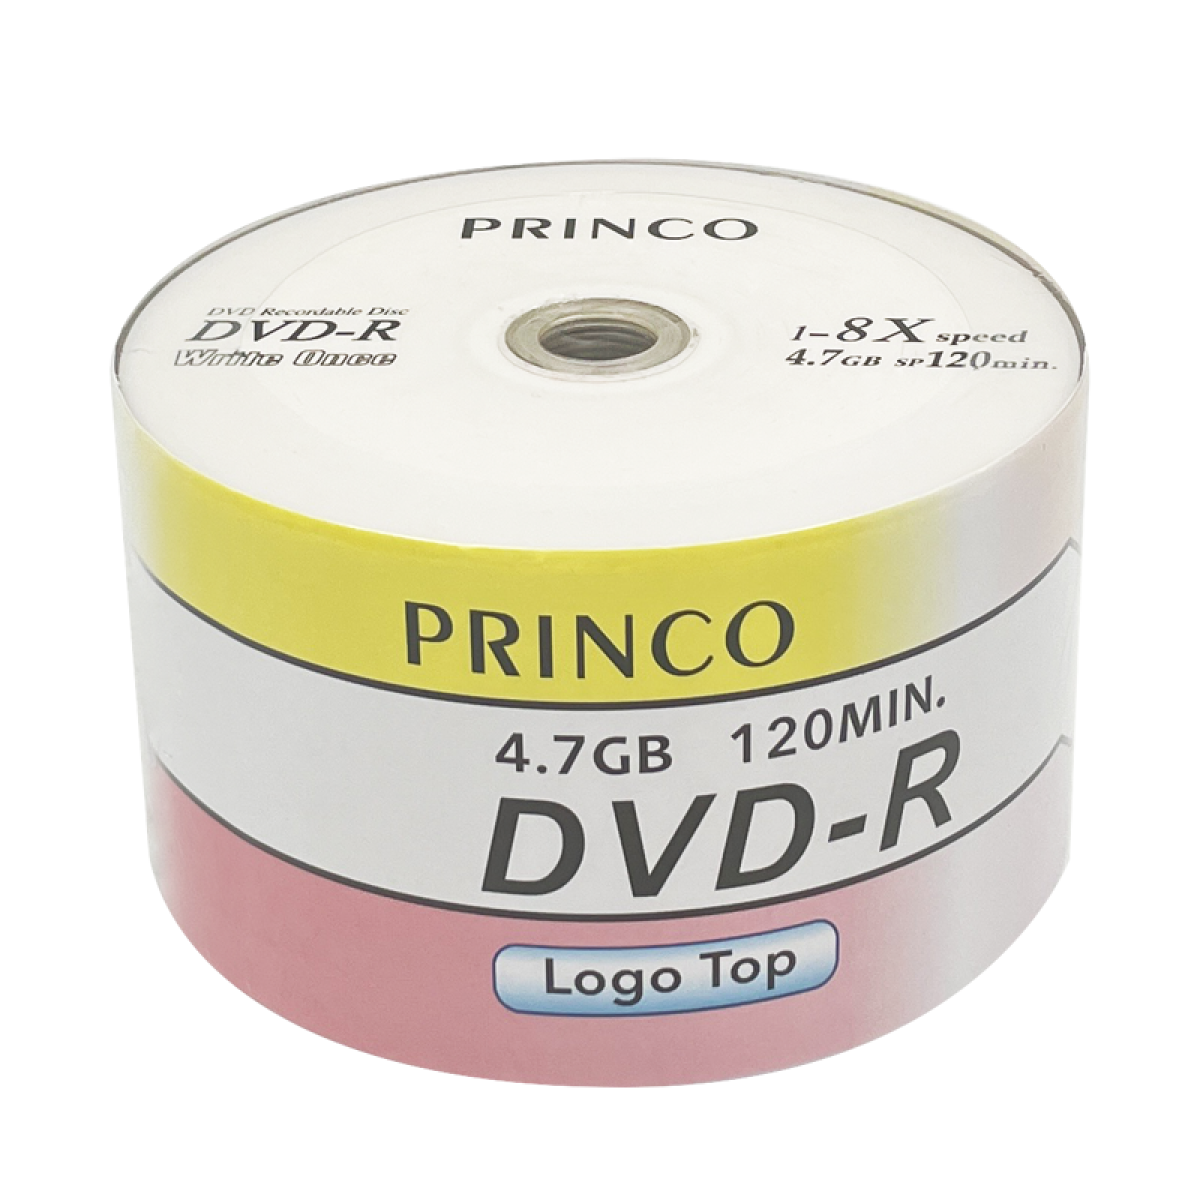 Princo Printable Dvd R